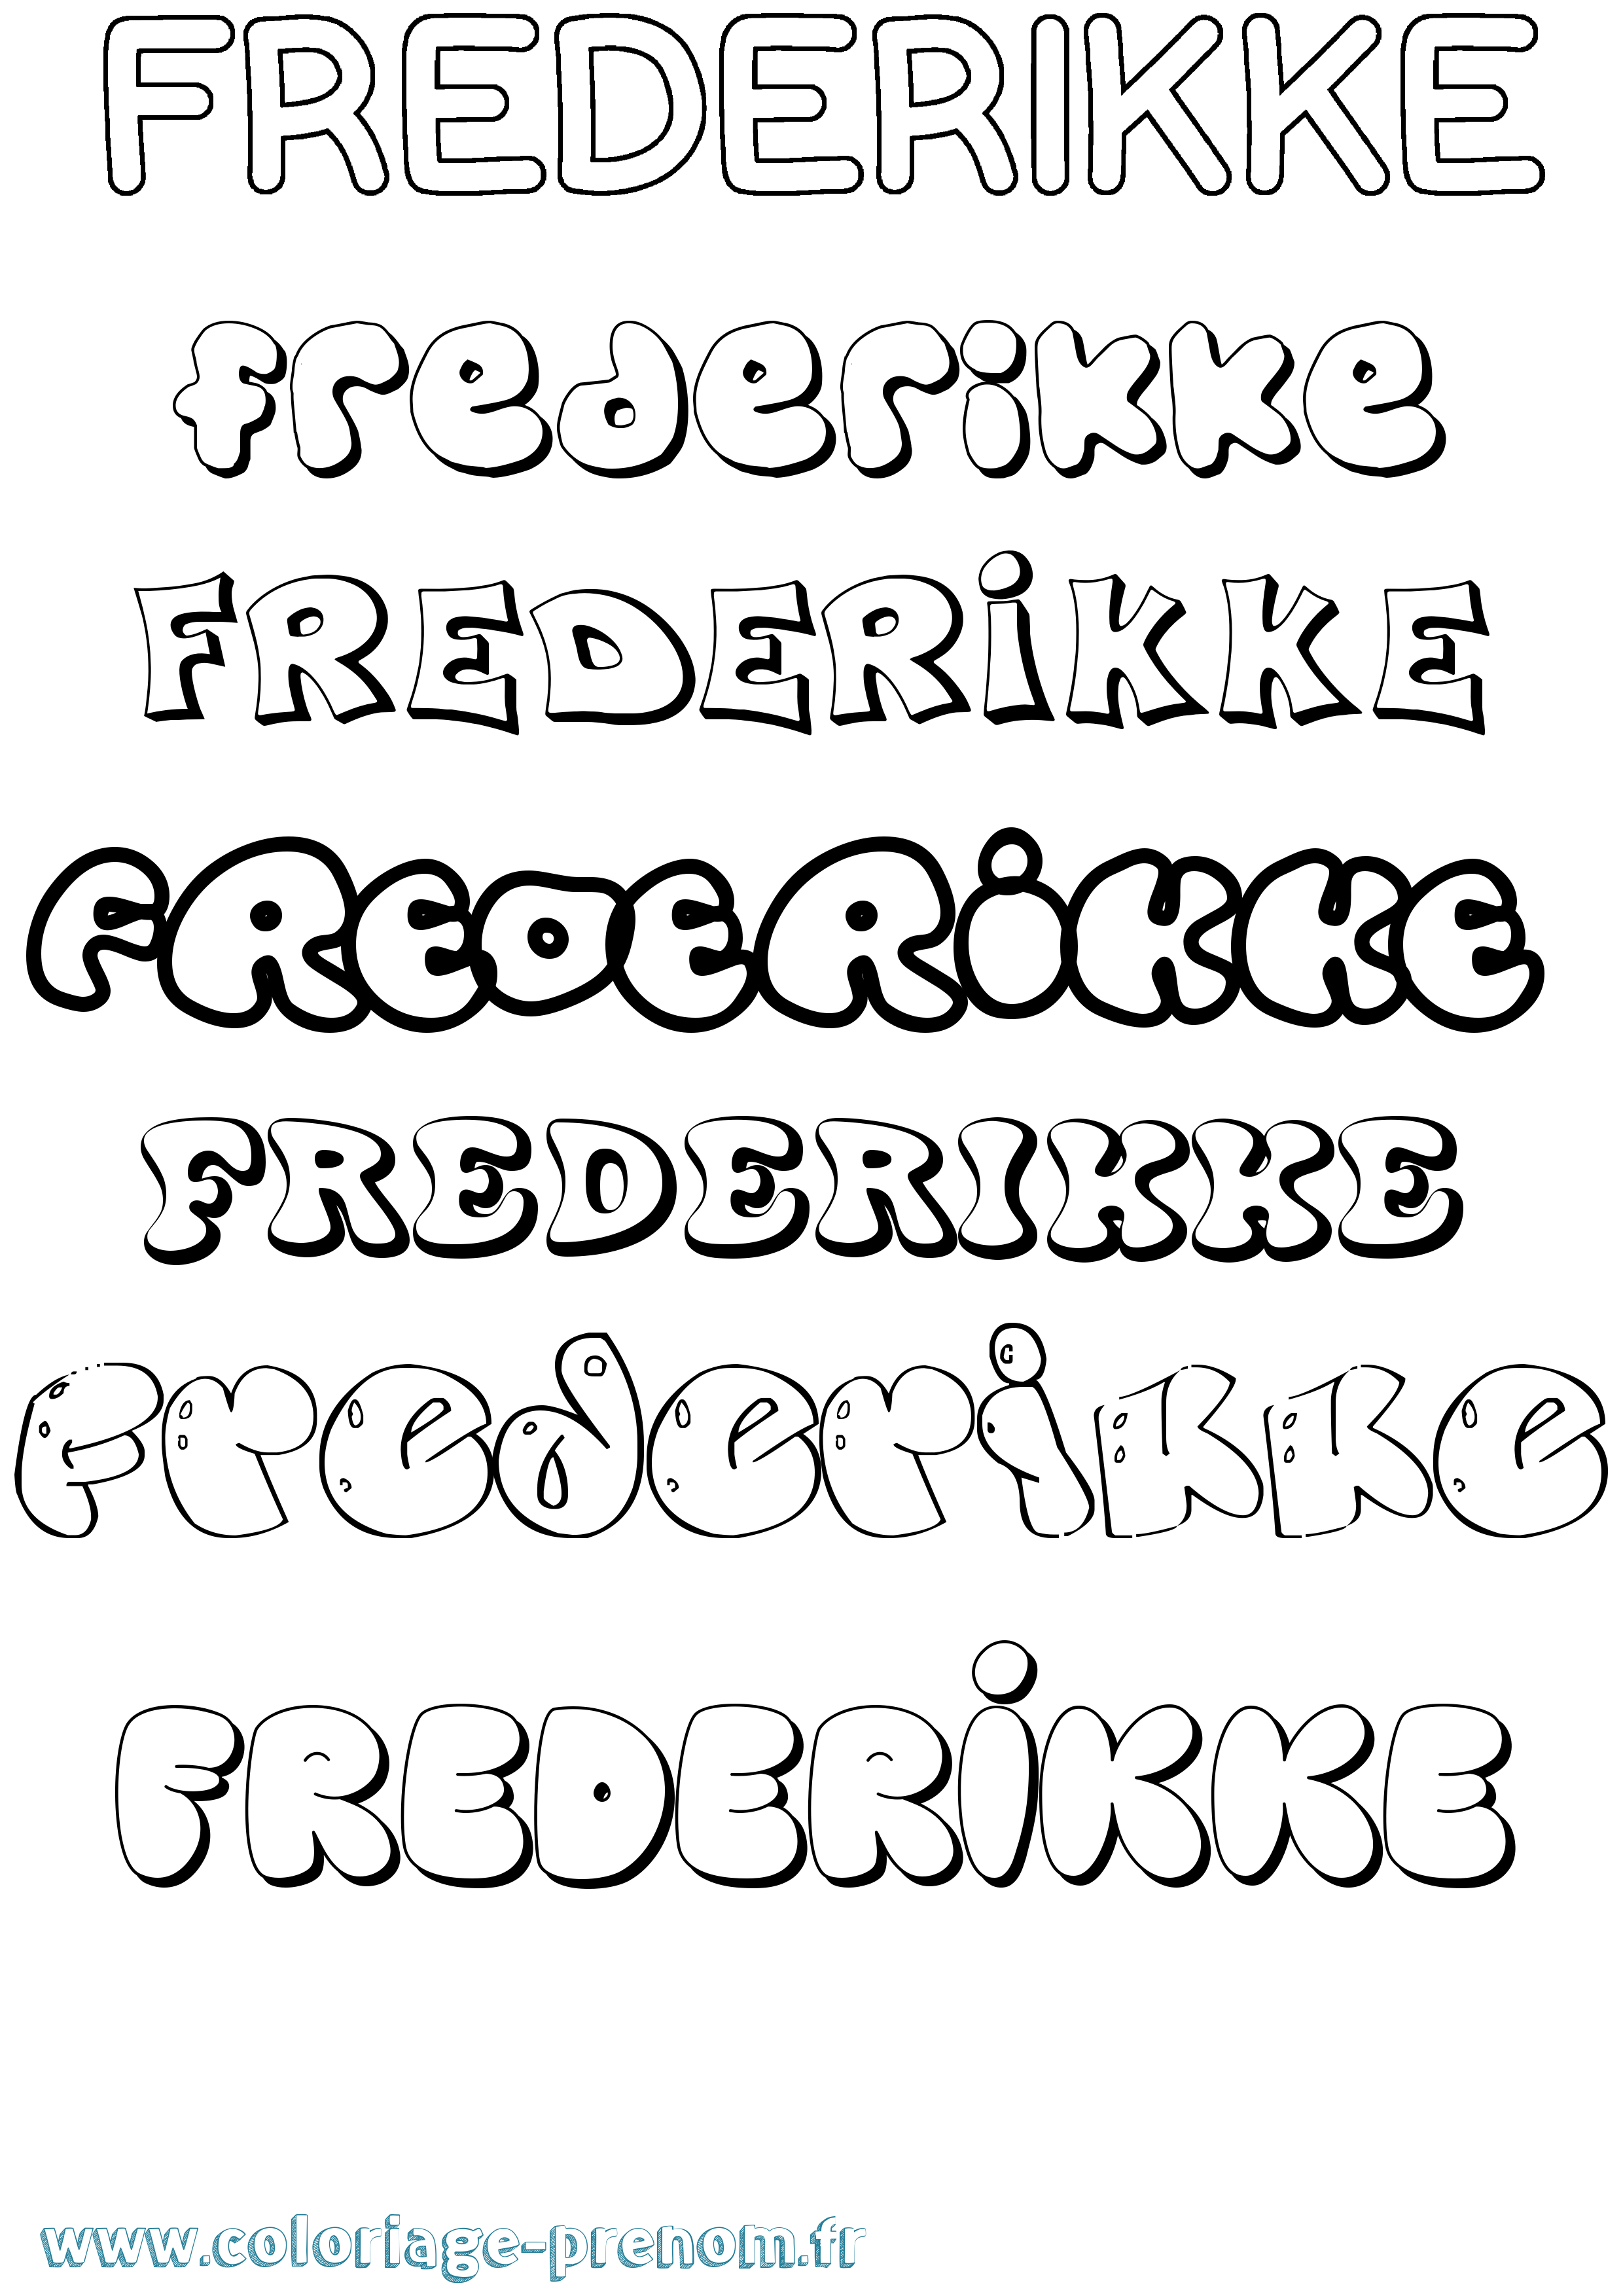 Coloriage prénom Frederikke Bubble